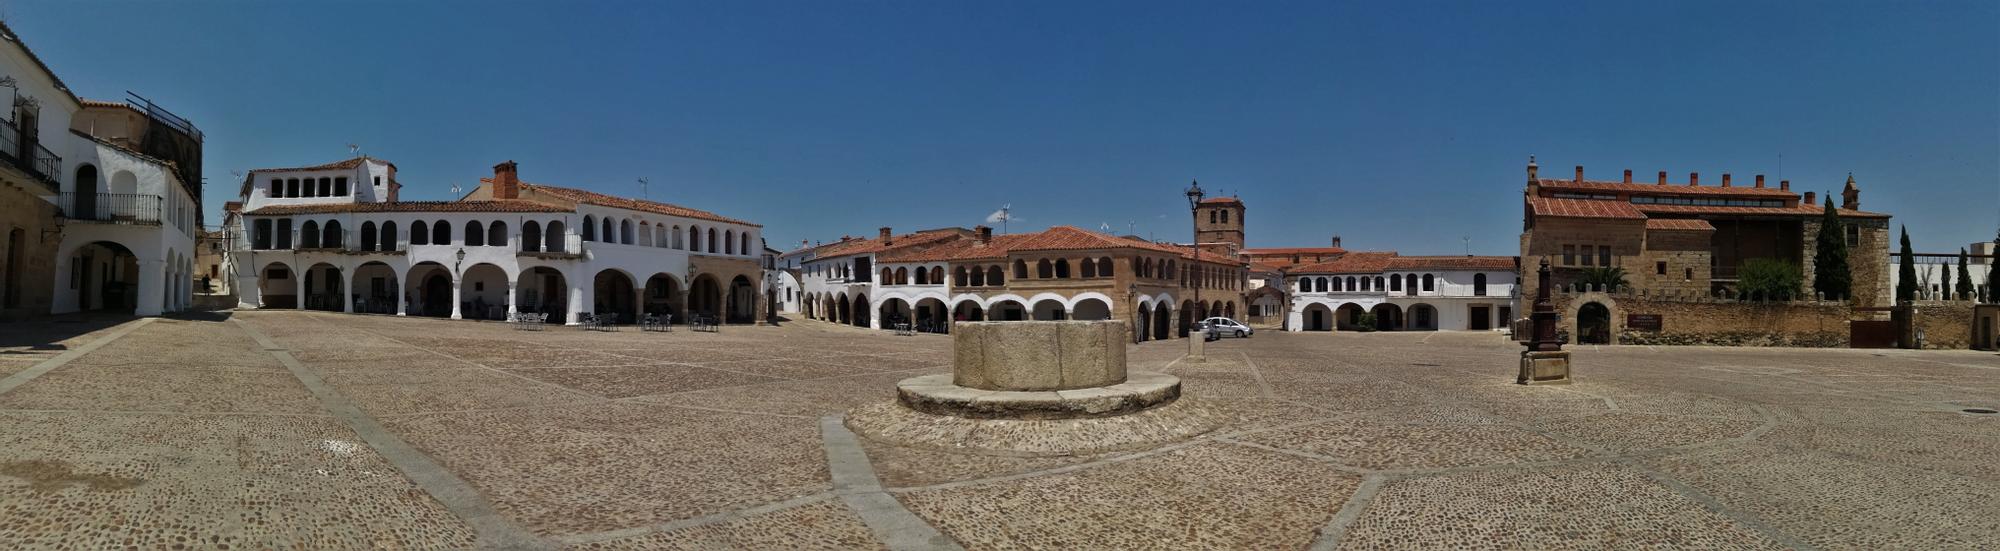 Plaza Porticada de Garrovillas de Alconétar.